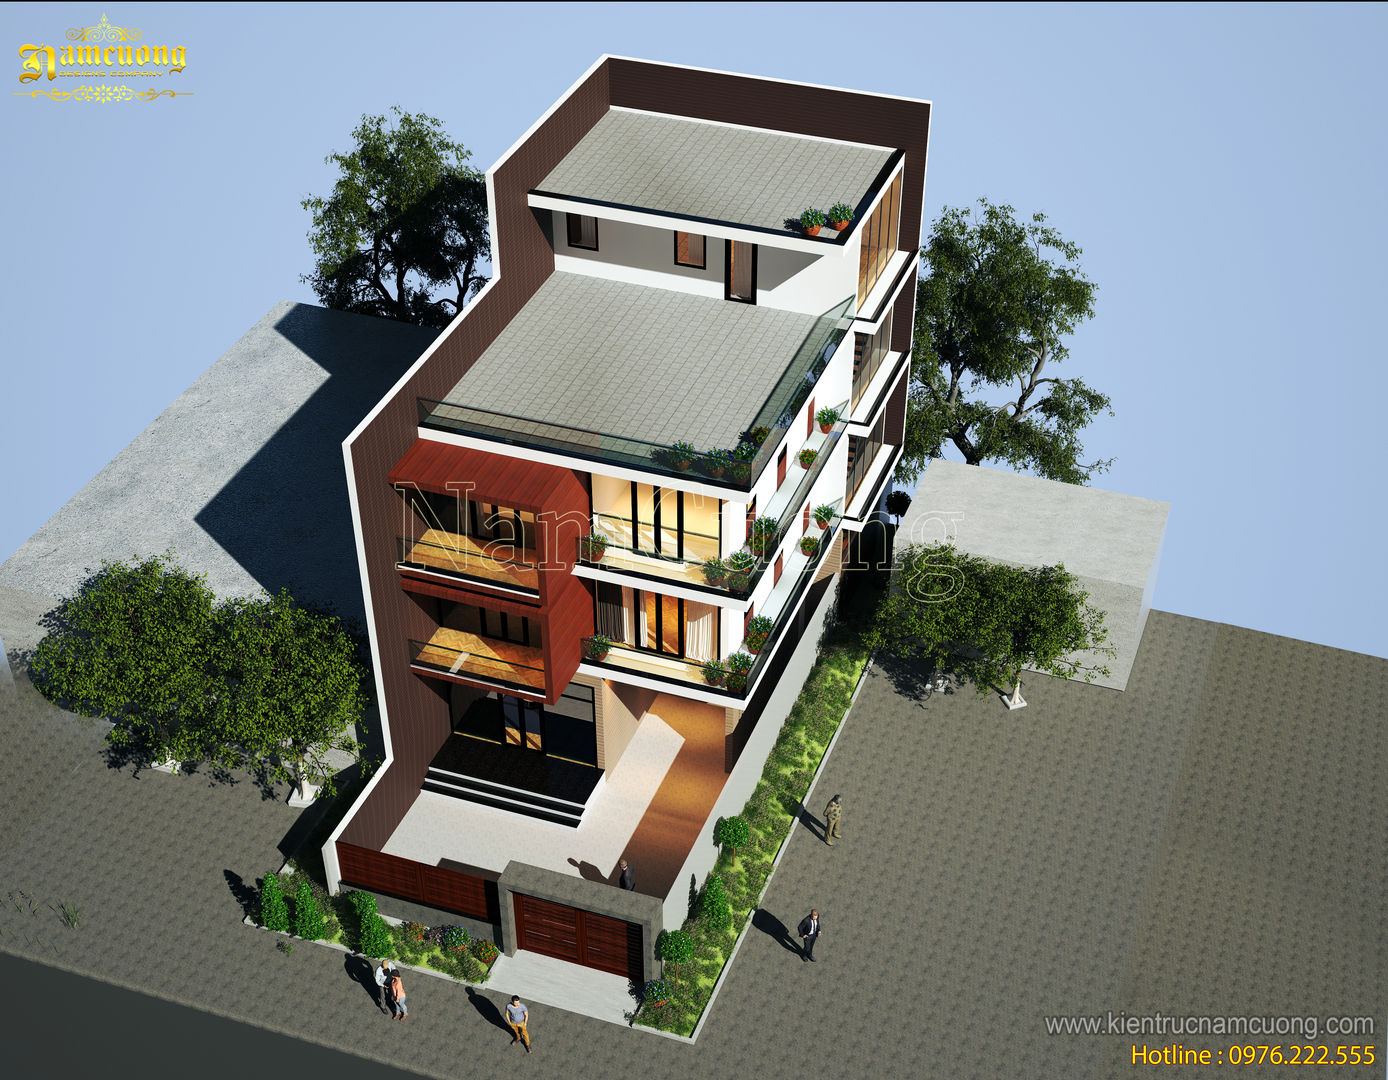 NamCuong design company, Công ty Cổ phần tư vấn thiết kế xây dựng Nam Cường Công ty Cổ phần tư vấn thiết kế xây dựng Nam Cường Casas modernas